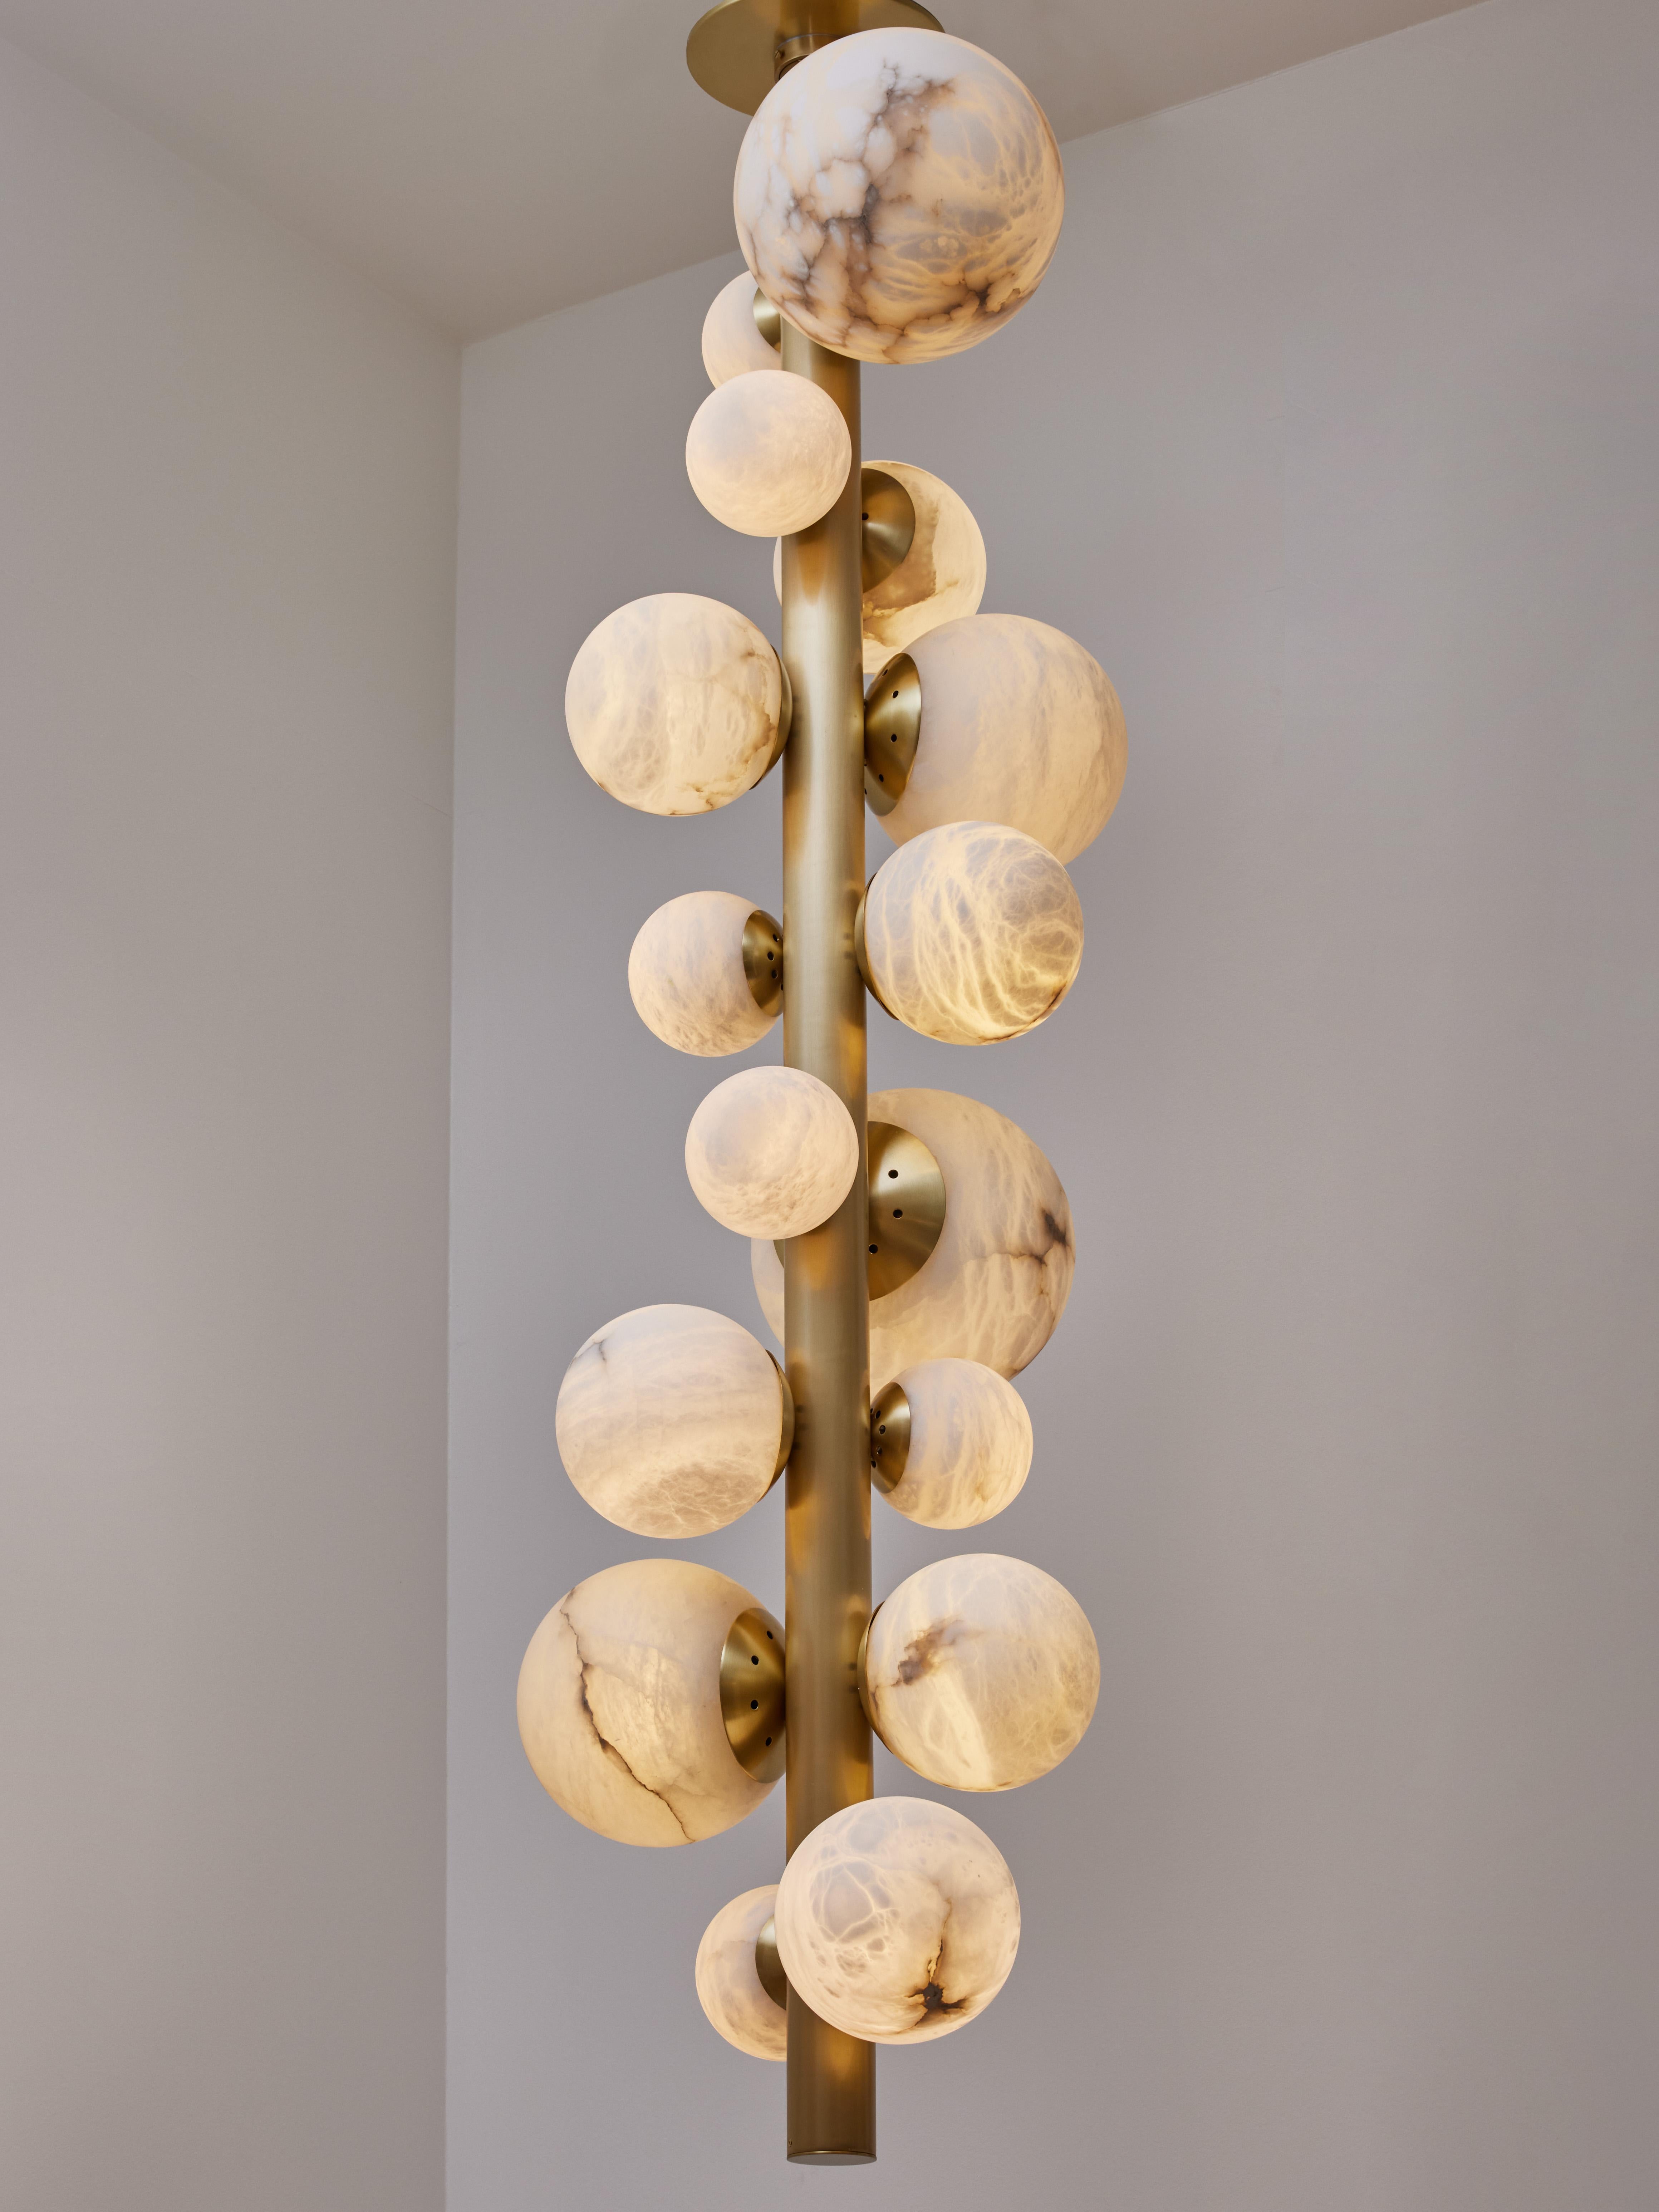 Neues Design von Glustin Luminaires, in Anlehnung an unsere Arbeiten mit Alabaster, bieten wir diese neue Variante an, die aus einem vertikalen Messingstiel besteht, der beleuchtete Alabasterkugeln in verschiedenen Größen trägt.